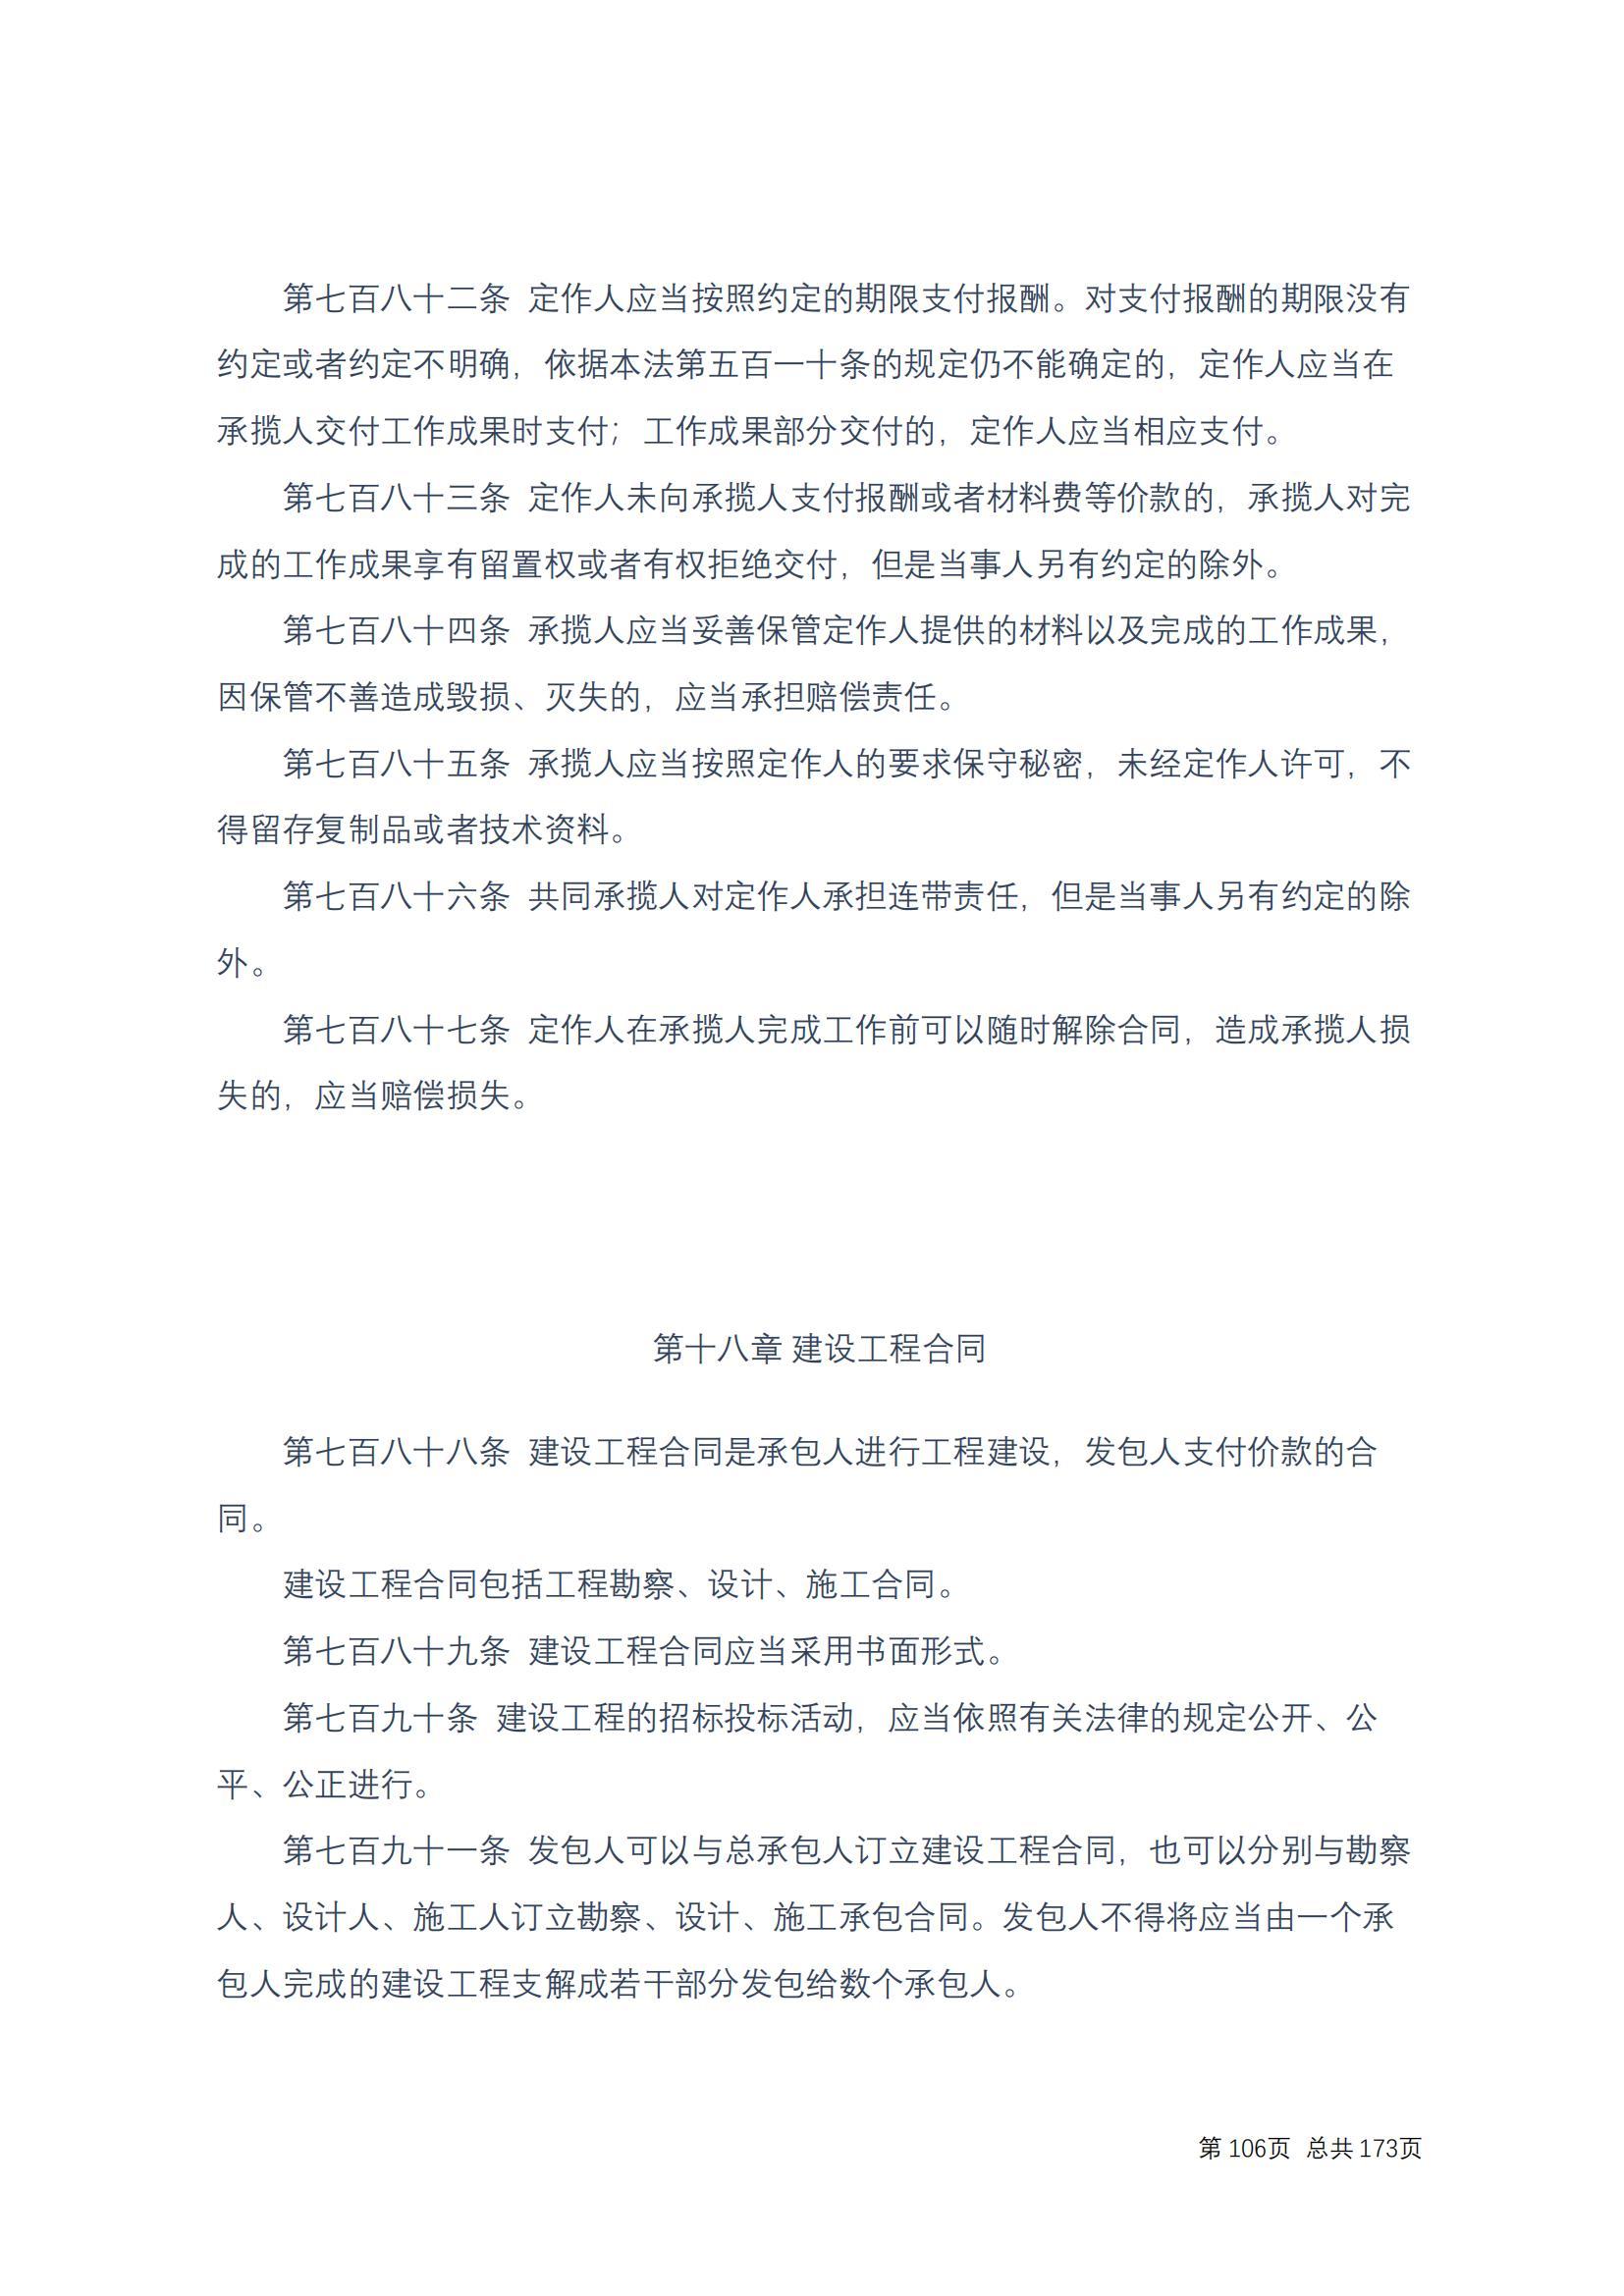 中华人民共和国民法典 修改过_105